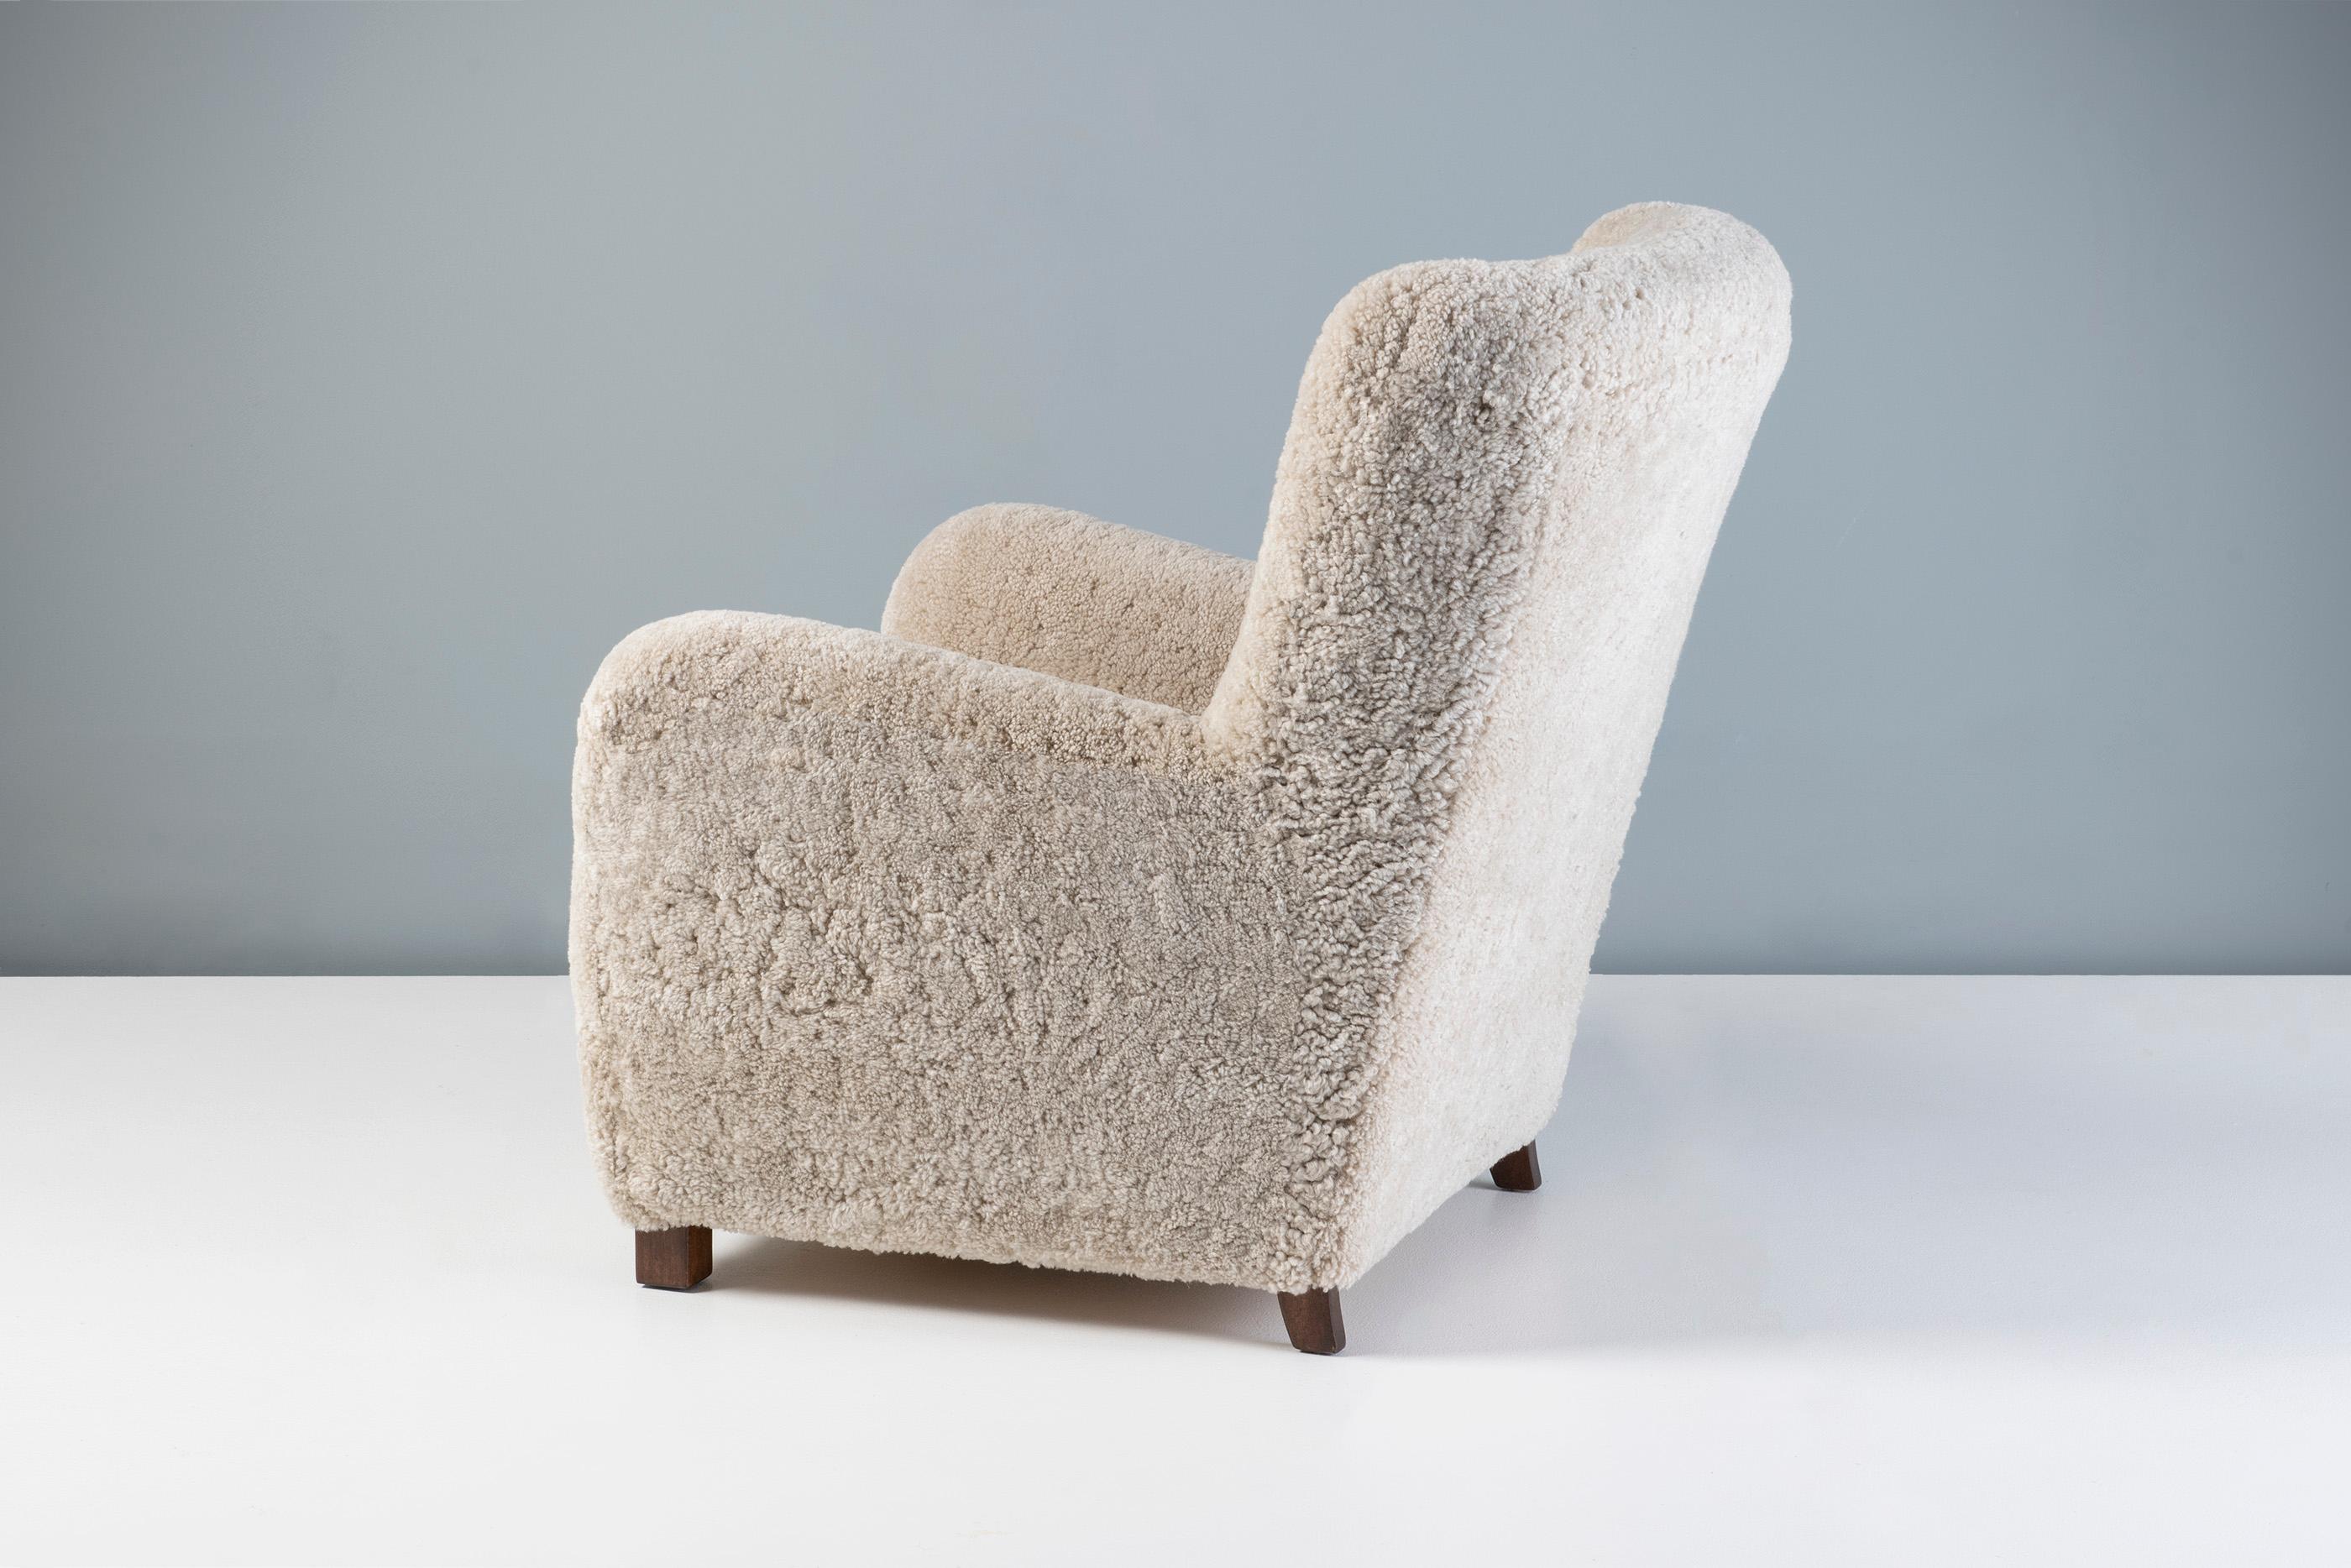 Fauteuil en peau de mouton d'ébéniste danois, vers les années 1940.

Cette grande chaise longue a été fabriquée par un ébéniste danois dans les années 1940 et est typique des chaises longues danoises de l'époque. Il est doté d'un dossier à oreilles